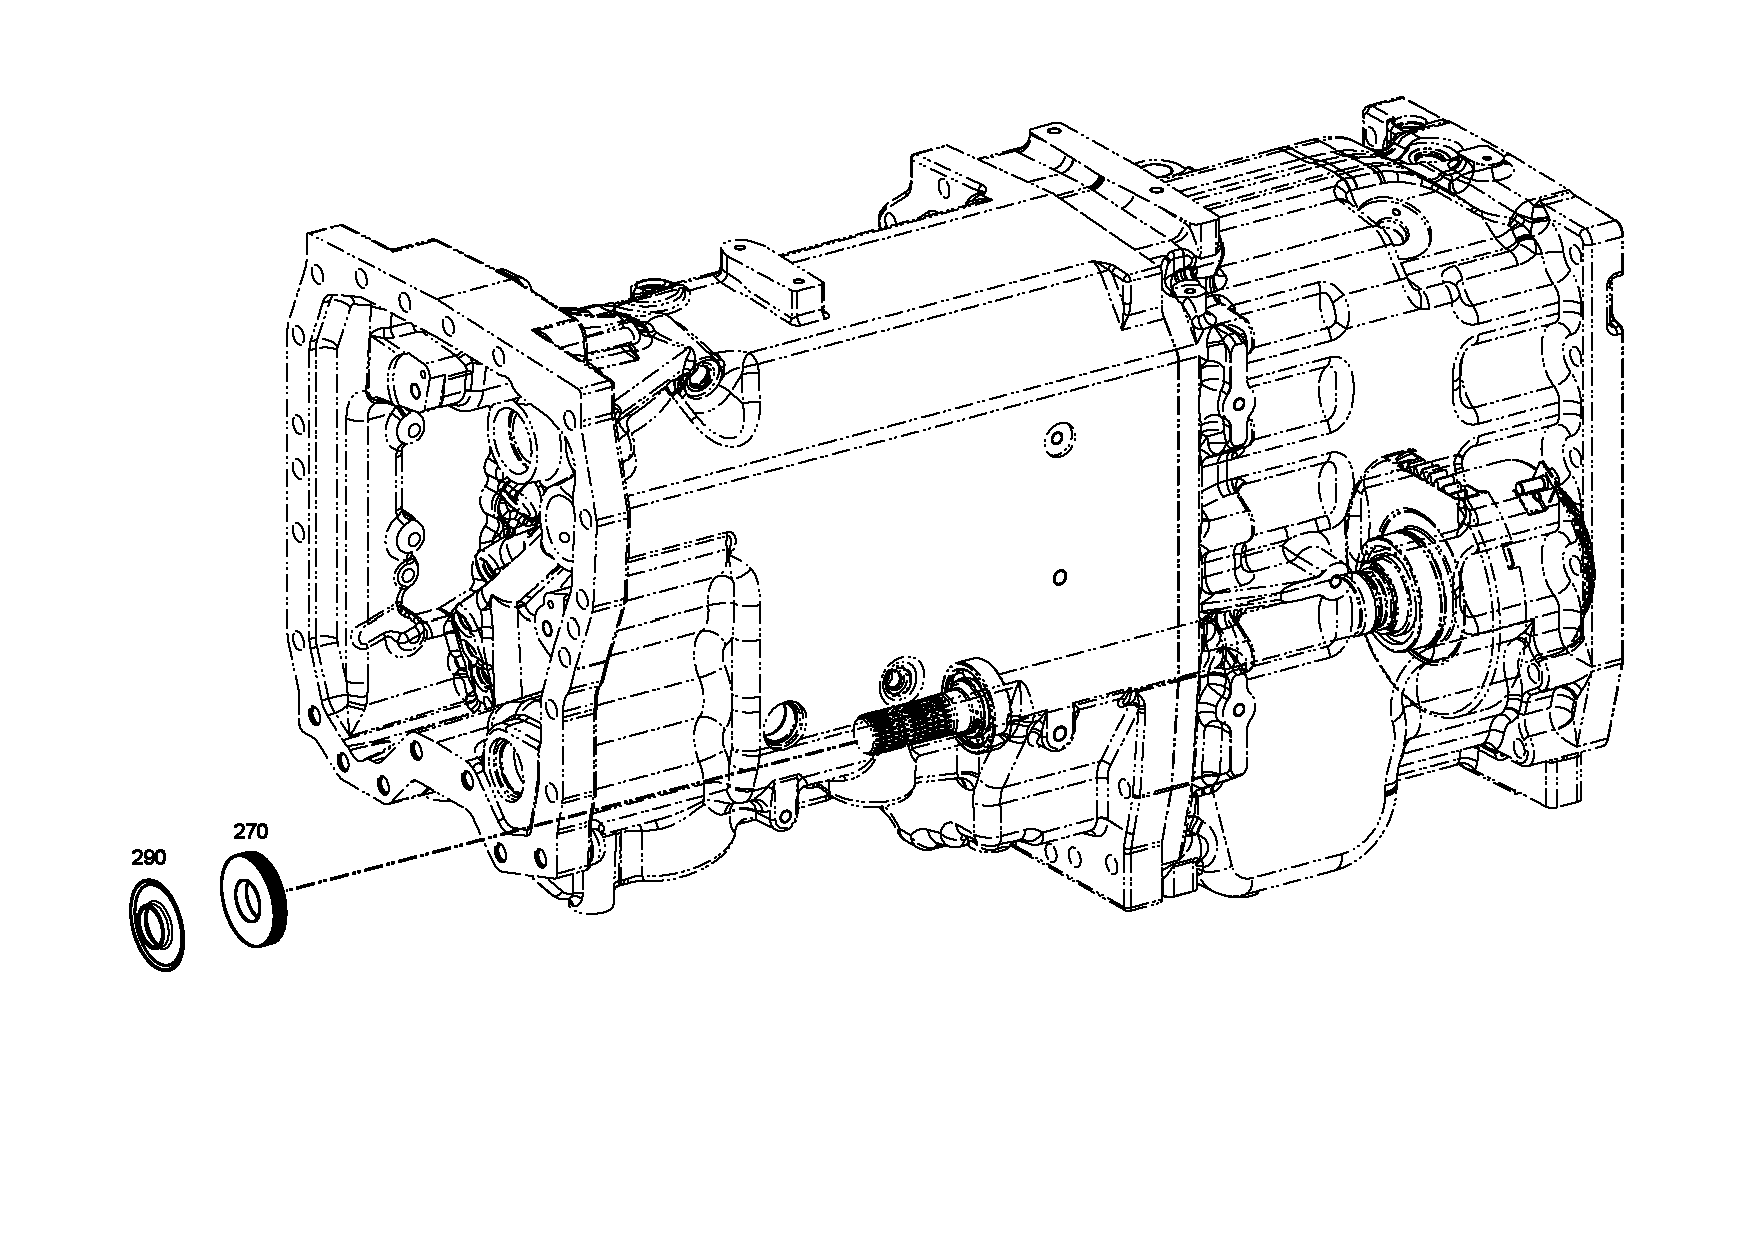 drawing for NACCO-IRV 1390914 - END SHIM (figure 2)